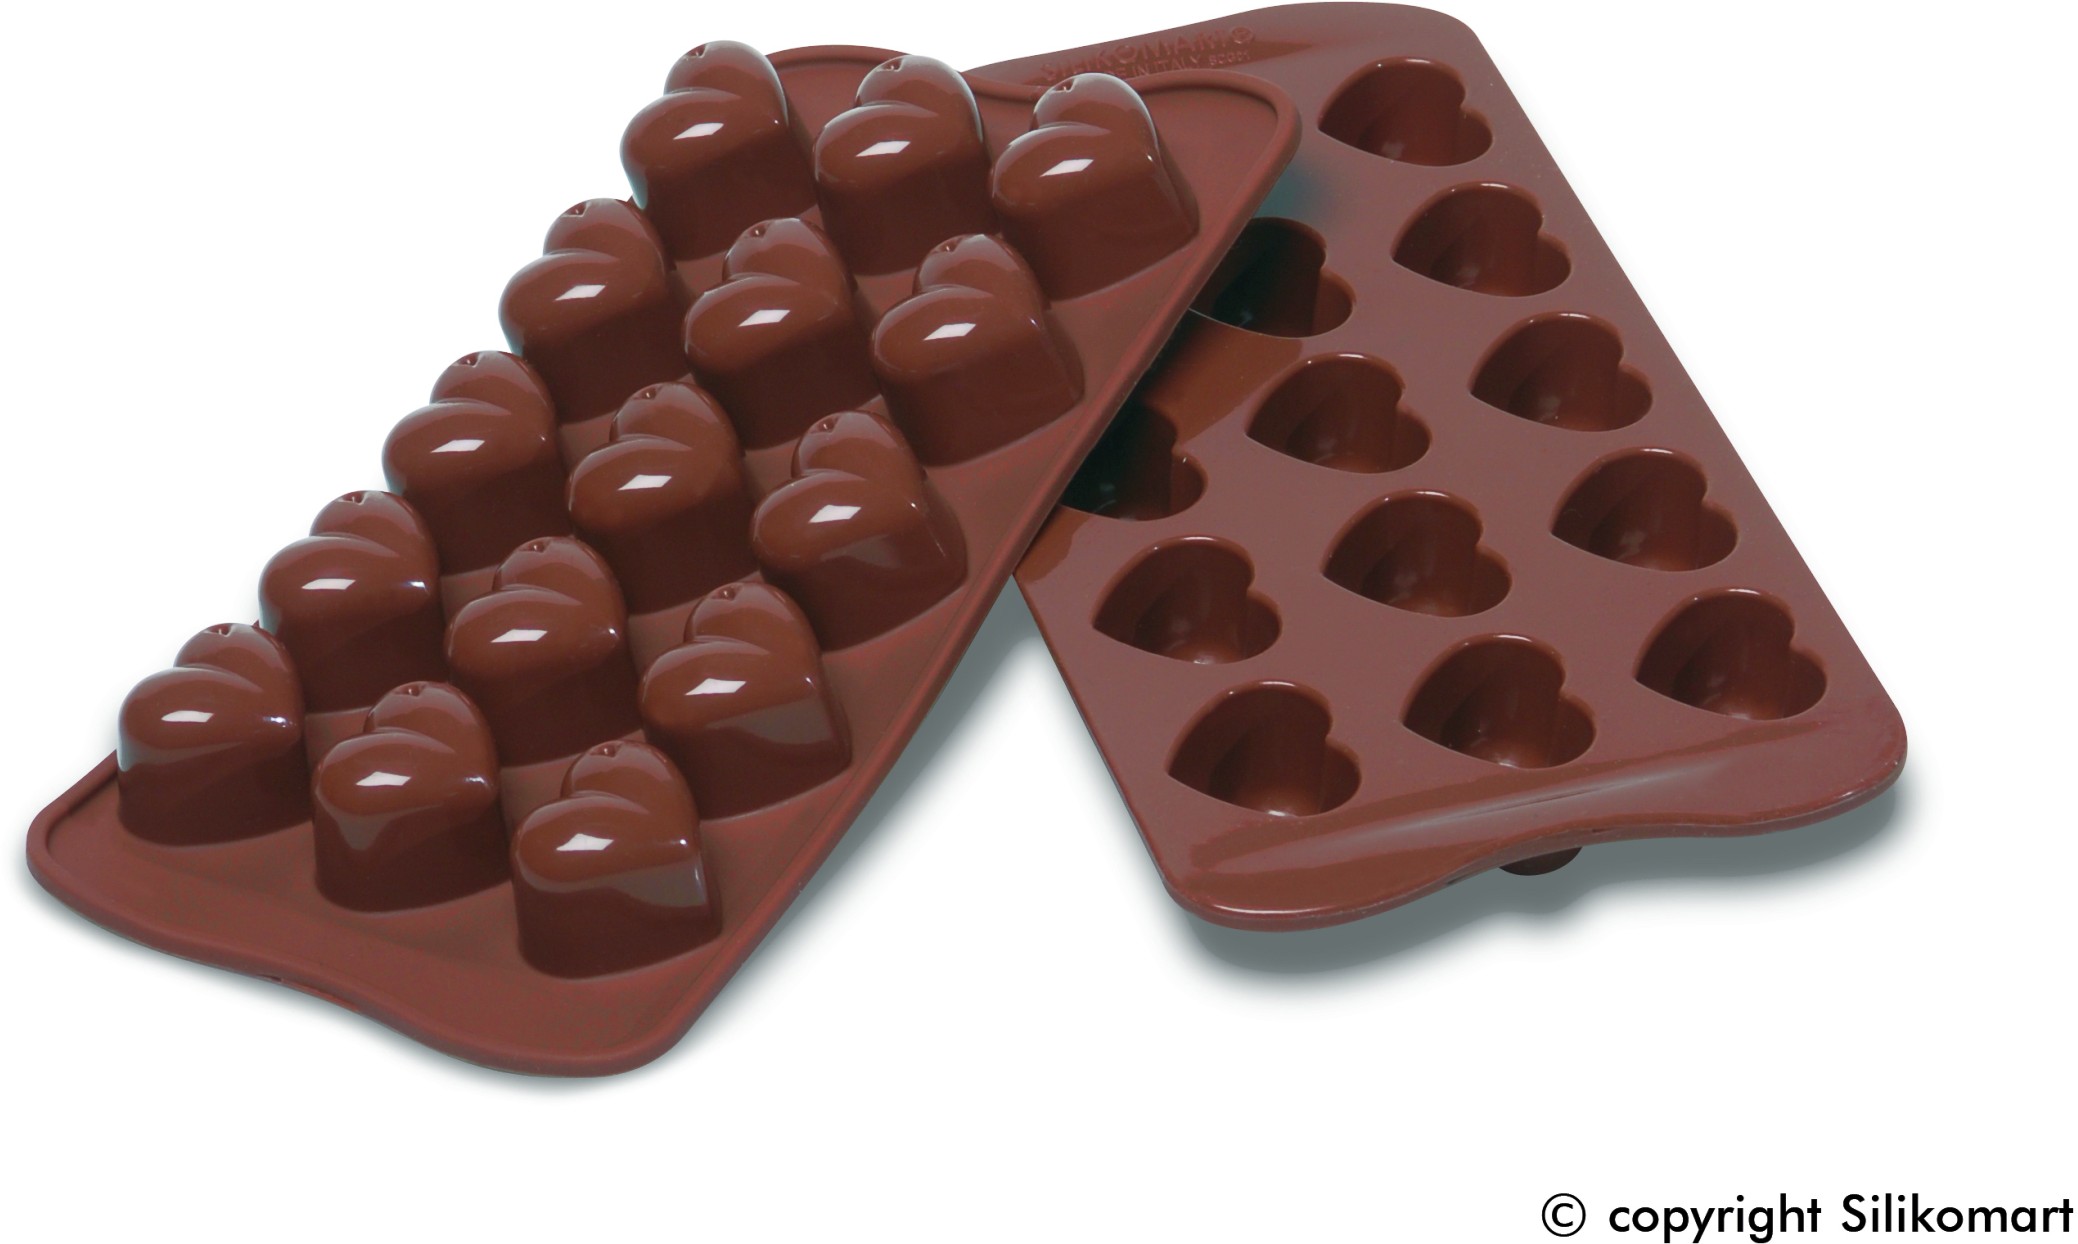 أقراص شوكولاتة تقي من الجلطة القلبية والدماغية